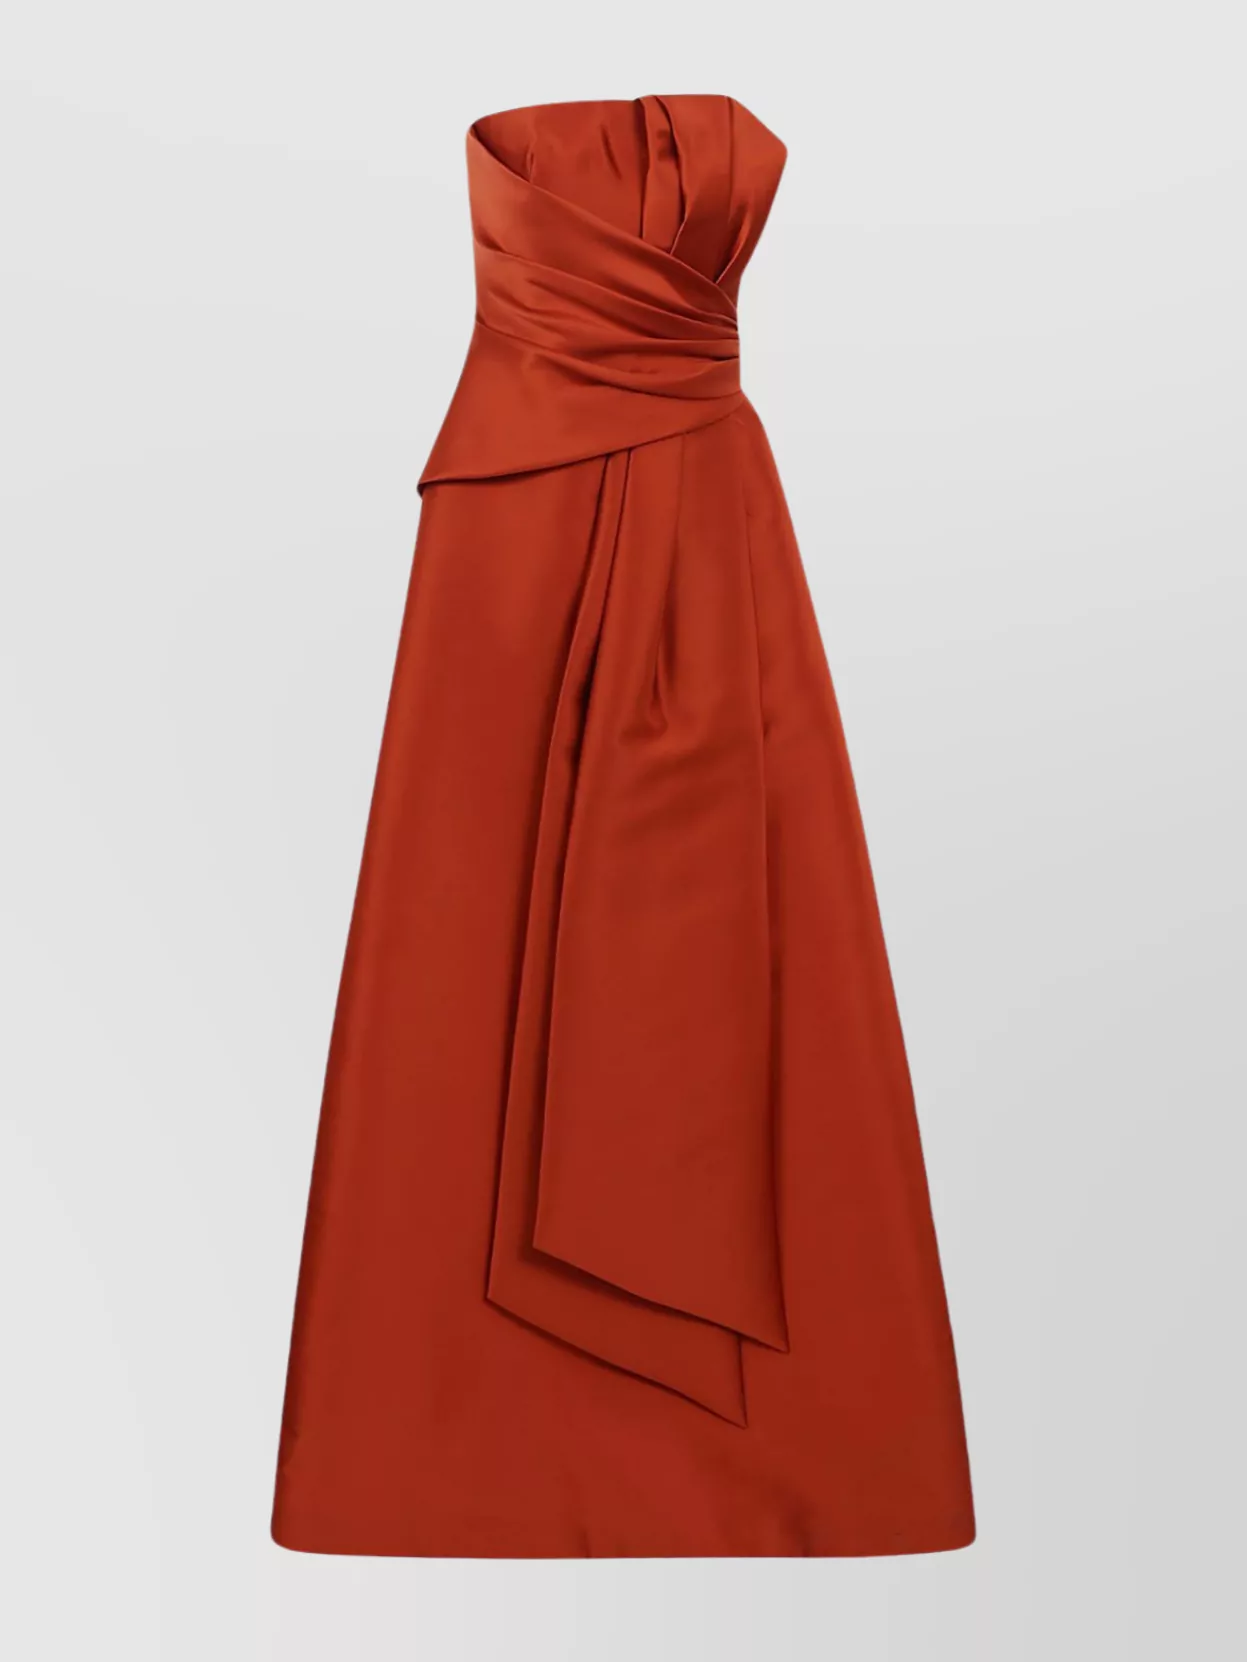 Alberta Ferretti Draped Mikado Silhouette Dress In Red